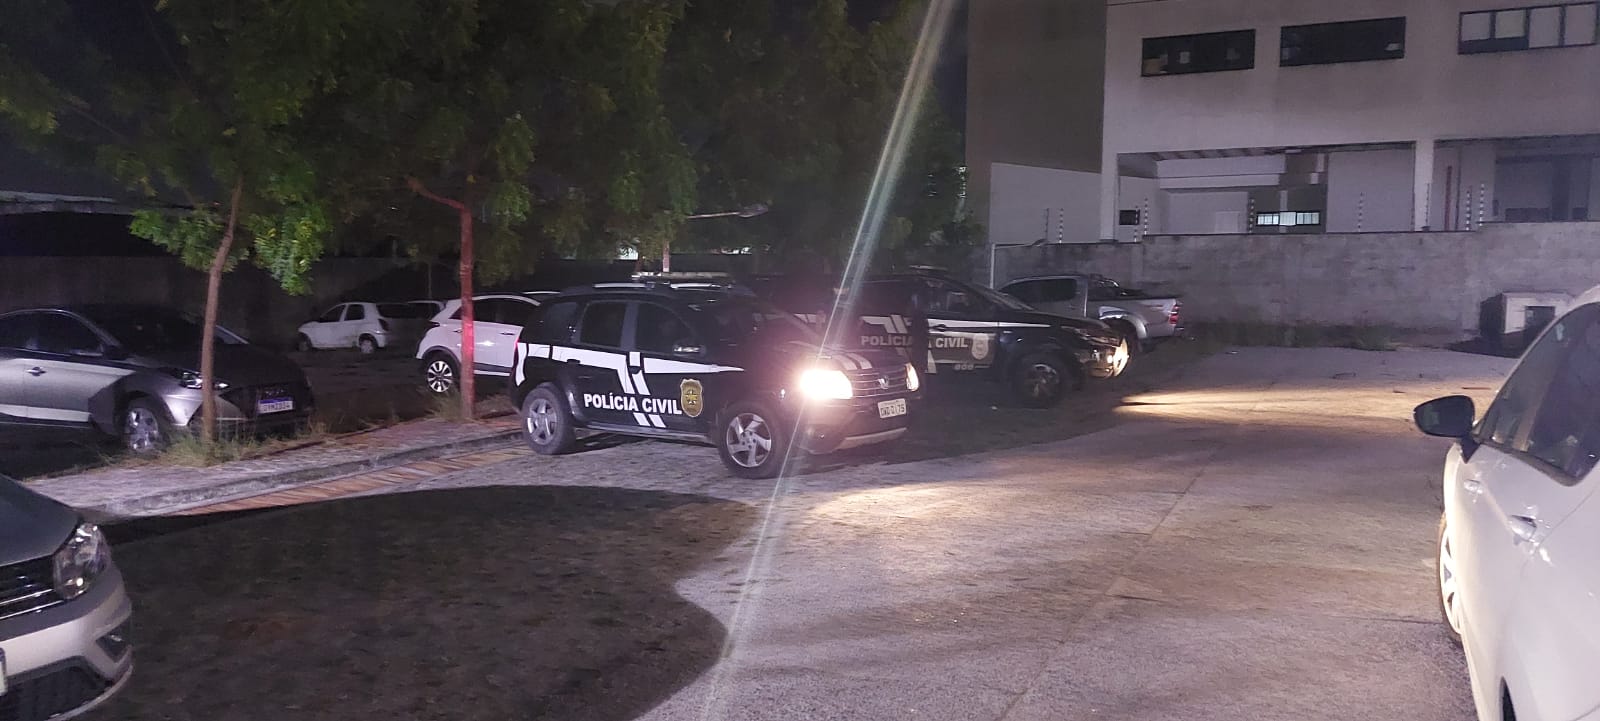 Polícia prende 16 suspeitos de integrarem organização criminosa no Agreste potiguar - Foto: PCRN